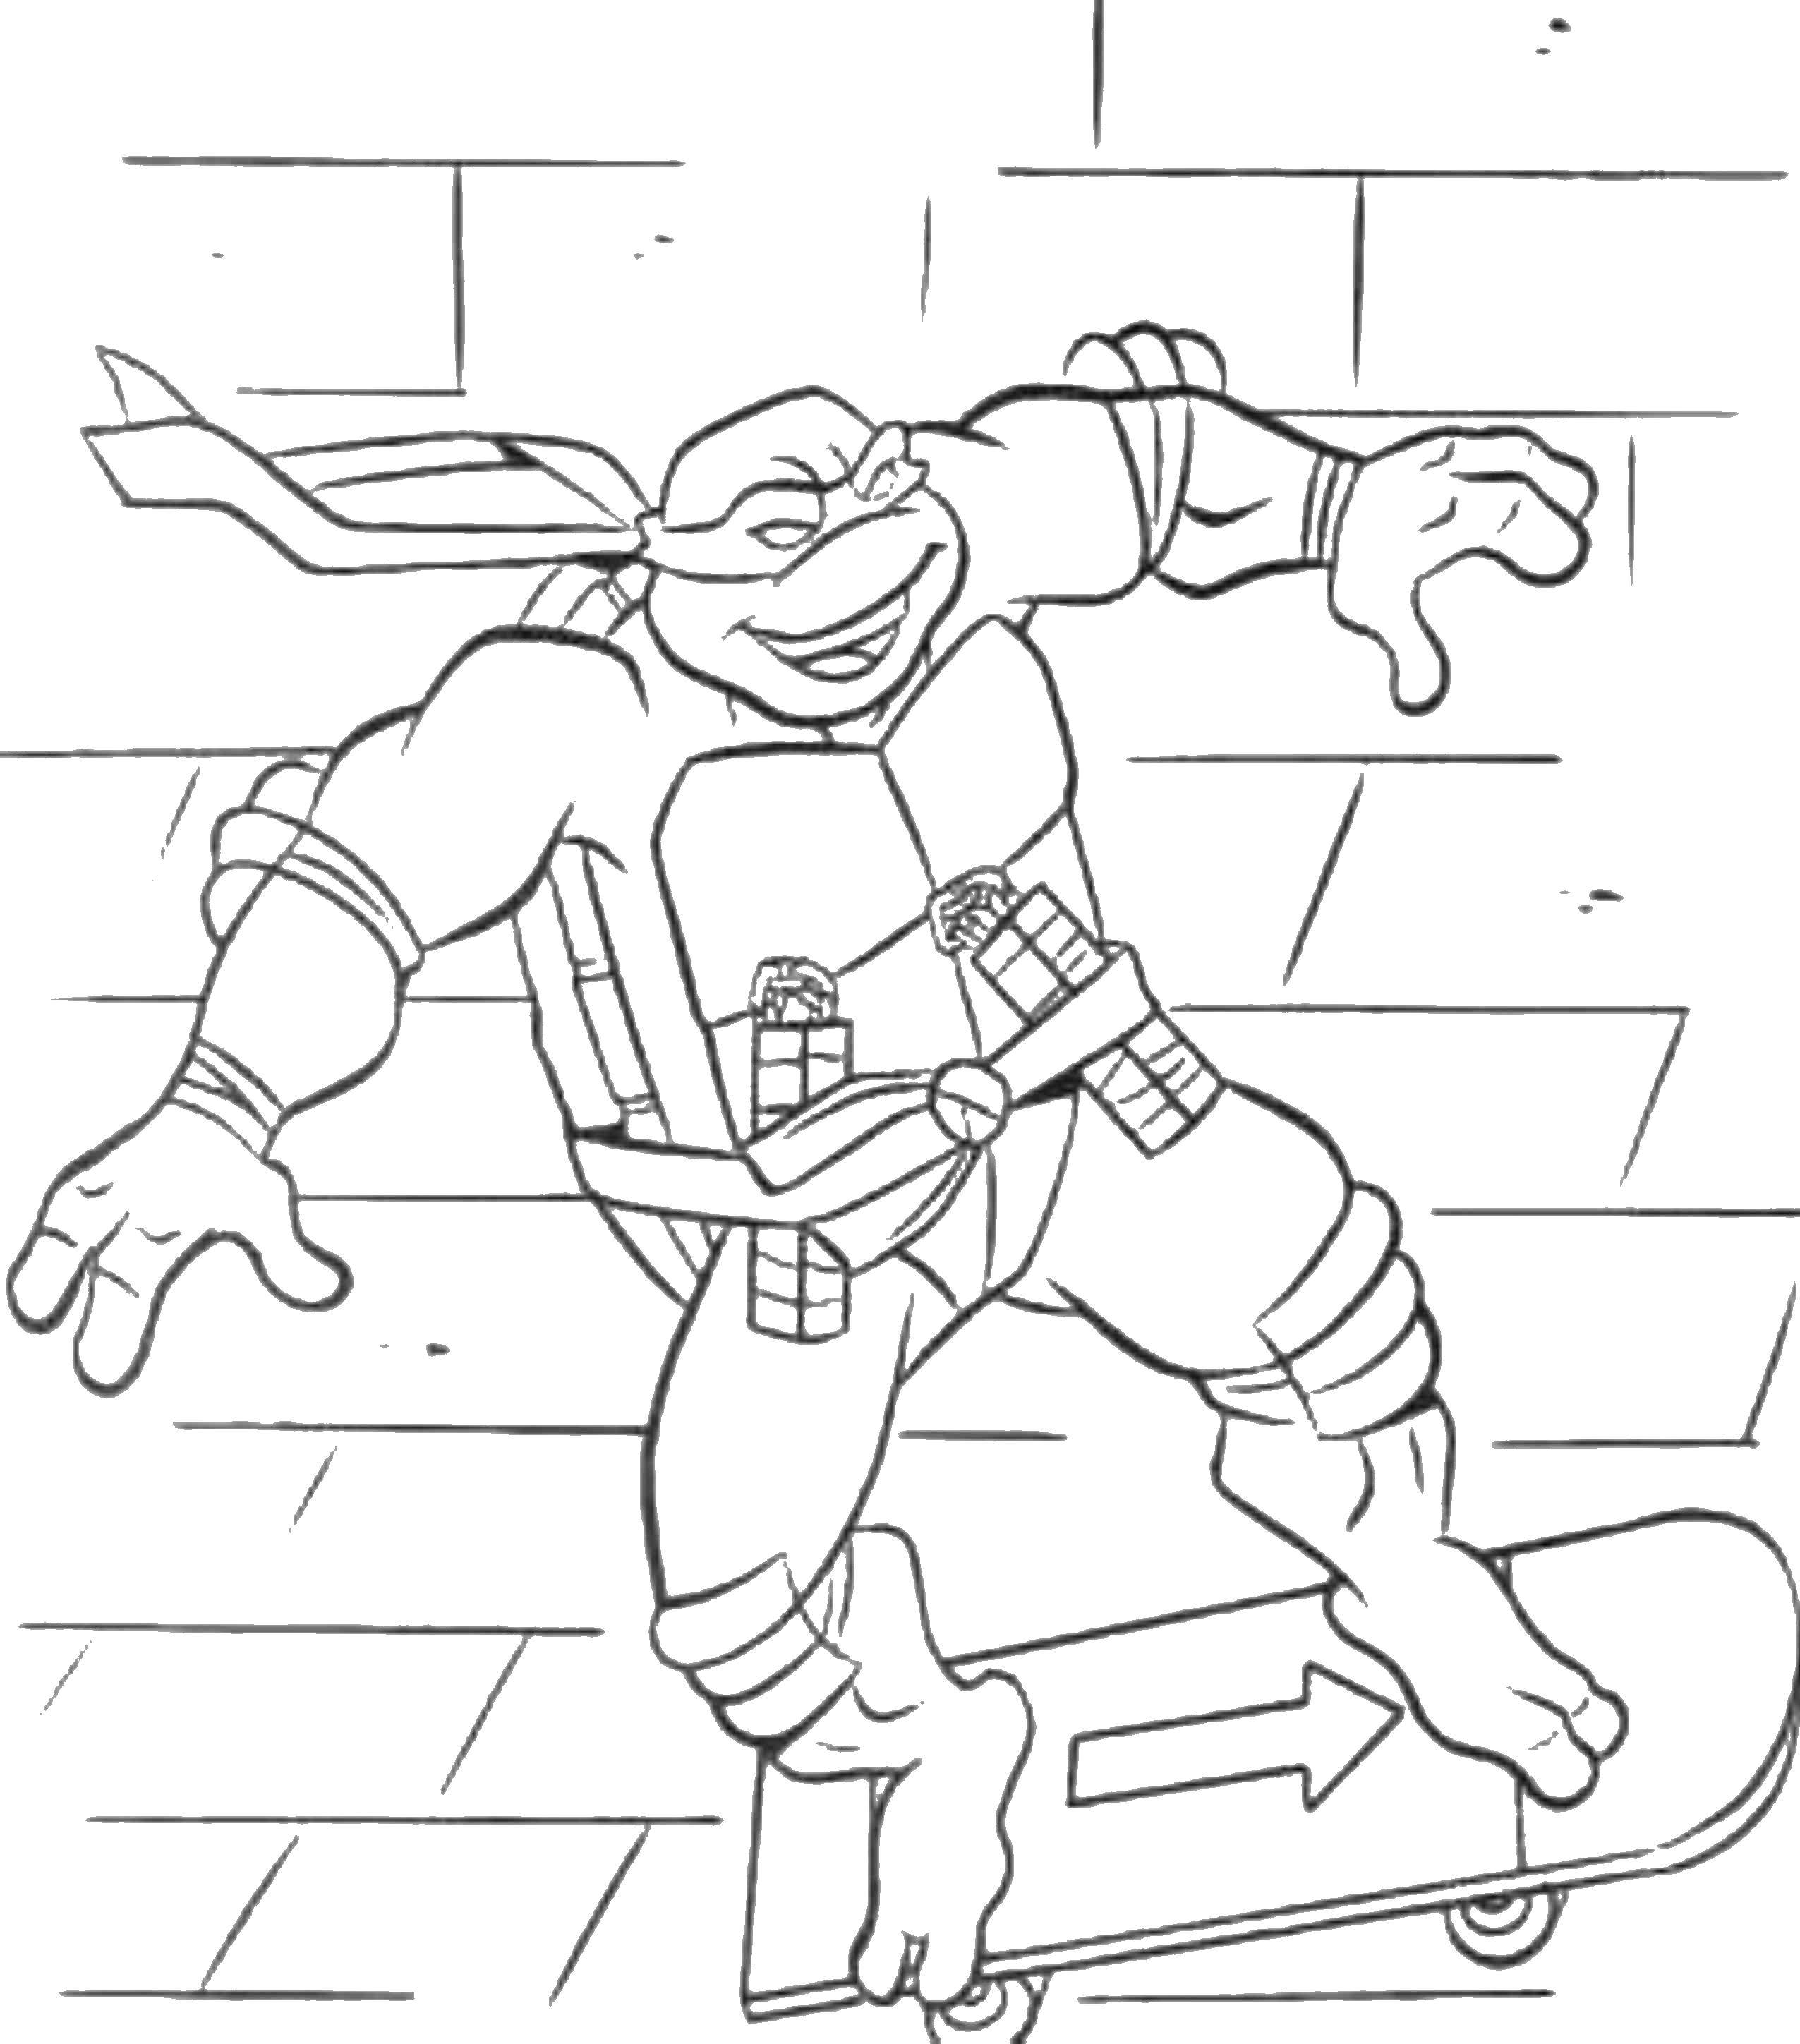 Coloring Michelangelo skateboards. Category teenage mutant ninja turtles. Tags:  Michelangelo, teenage mutant ninja turtles.